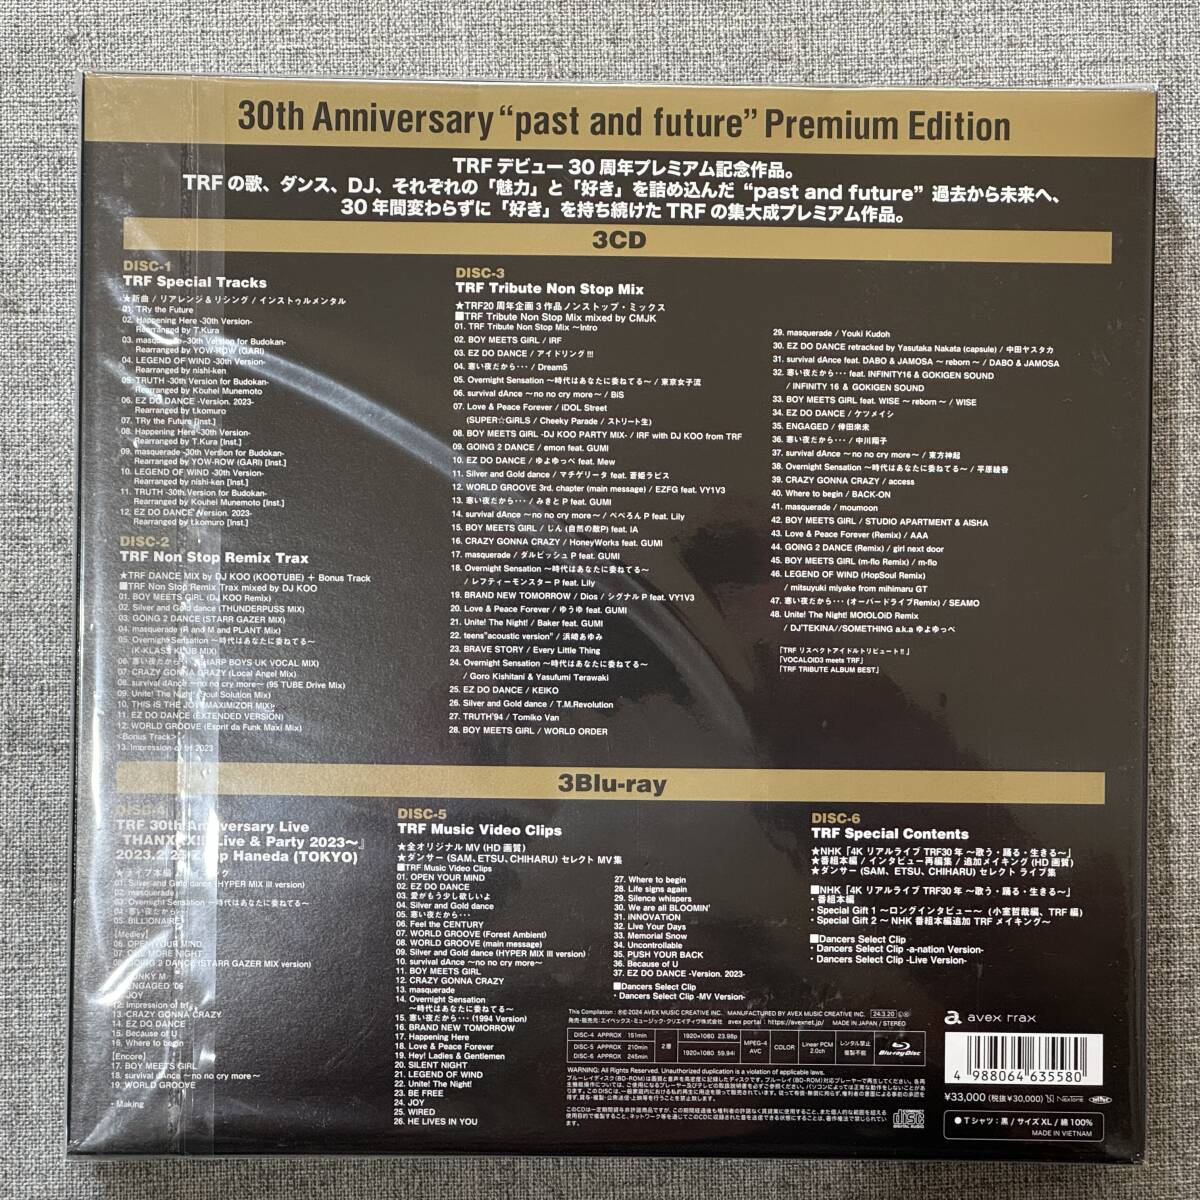 ライブBlu-ray TRF『30th Anniversary “past and future” Premium Edition初回生産限定盤 』NHK「4Kリアルライブ 」収録 小室哲哉の画像2